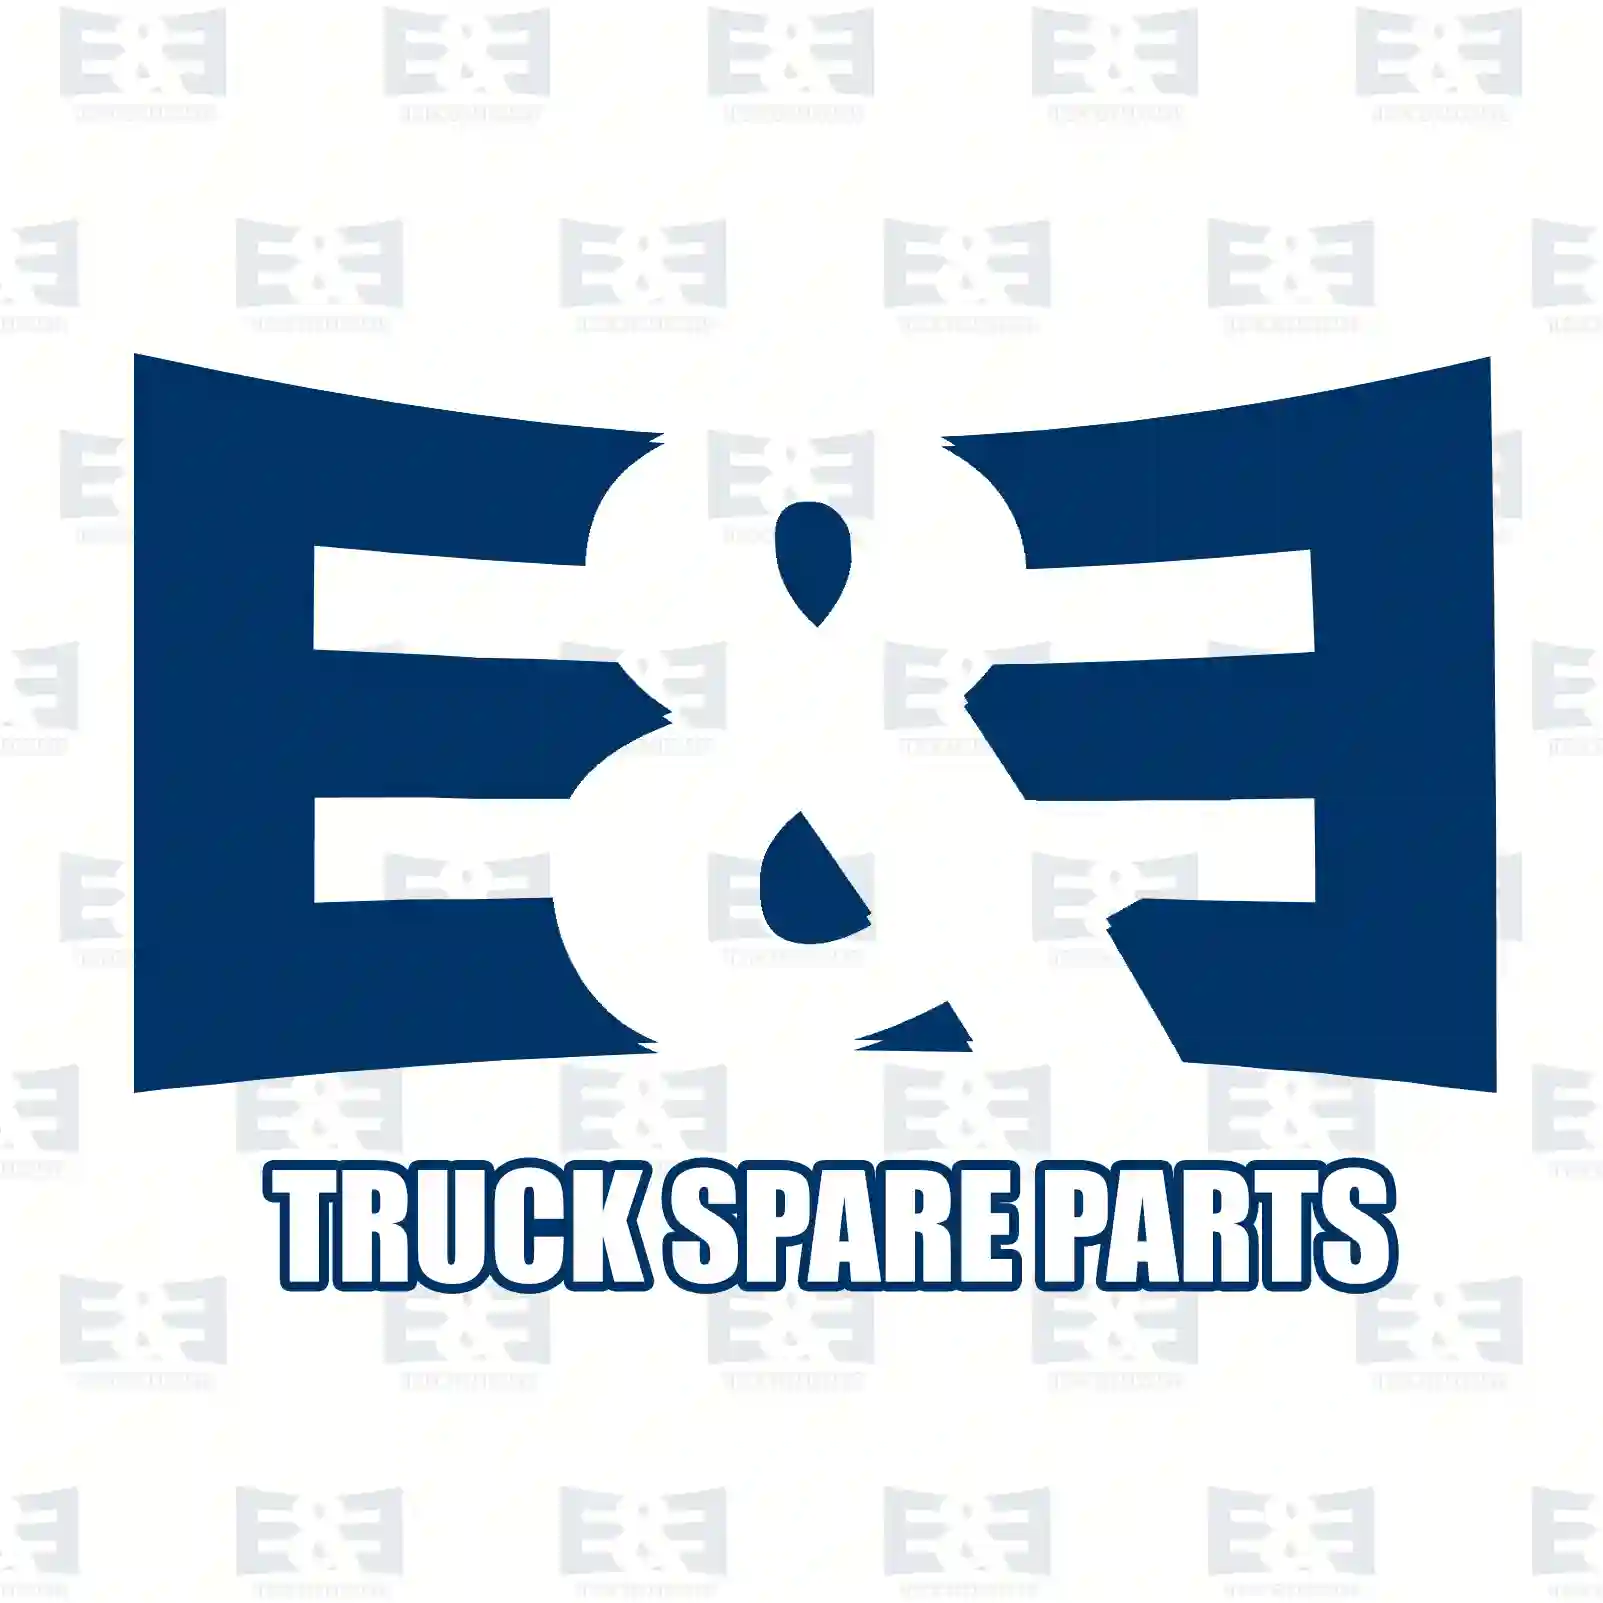 Crown wheel & pinion, 2E2279562, 1801515, 1931480, 2598401 ||  2E2279562 E&E Truck Spare Parts | Truck Spare Parts, Auotomotive Spare Parts Crown wheel & pinion, 2E2279562, 1801515, 1931480, 2598401 ||  2E2279562 E&E Truck Spare Parts | Truck Spare Parts, Auotomotive Spare Parts